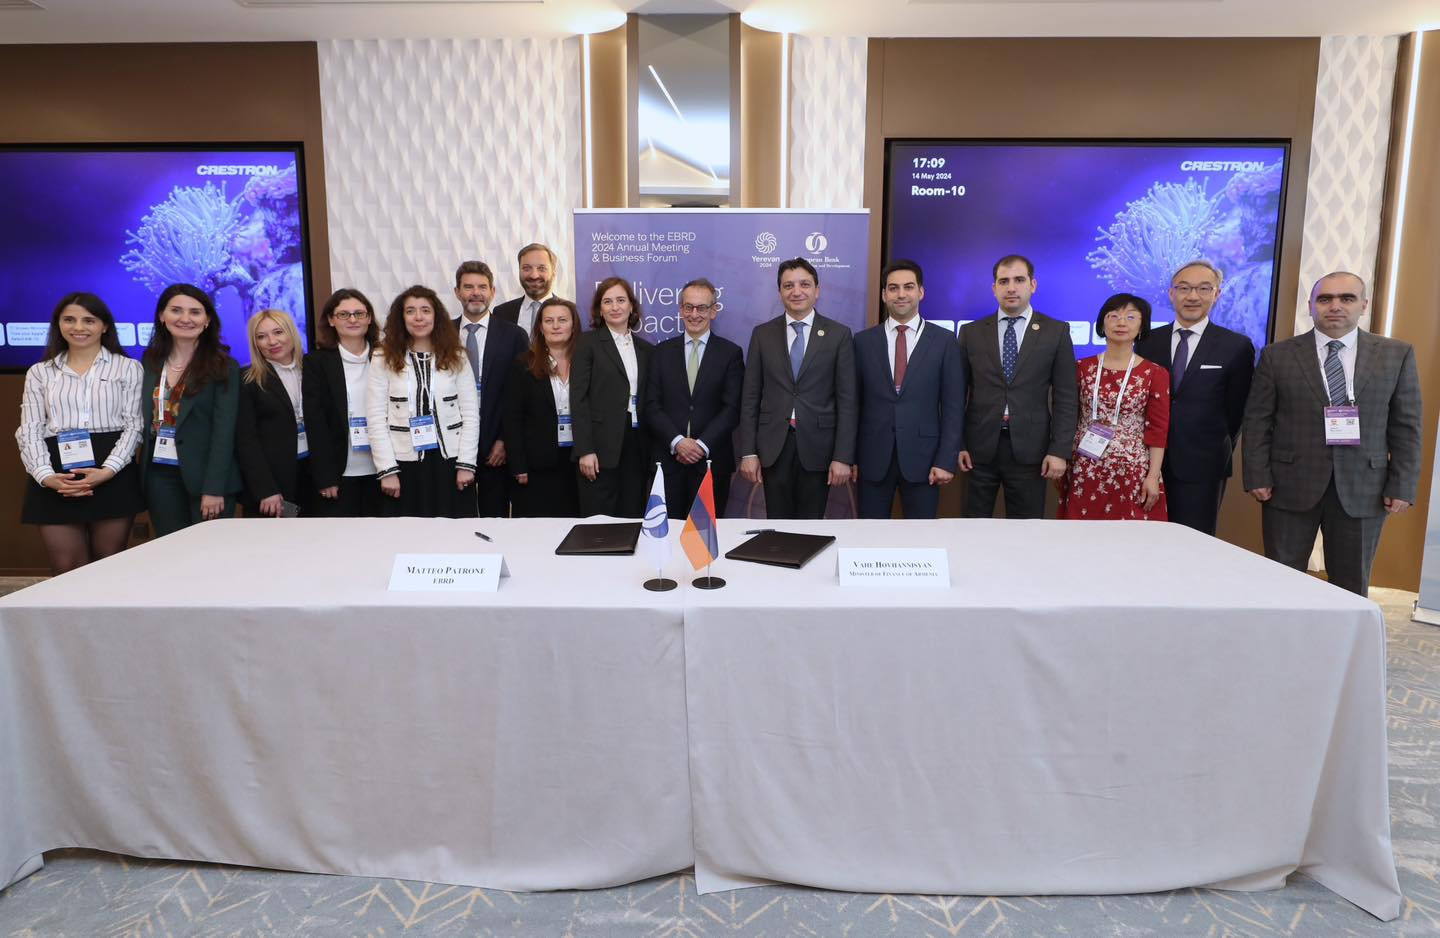 Հայաստանի Հանրապետության ու Վերակառուցման և զարգացման եվրոպական բանկի միջև ստորագրվել են «Սյունիքի մաքսային և լոգիստիկ կենտրոն» վարկային և դրամաշնորհային համաձայնագրերը